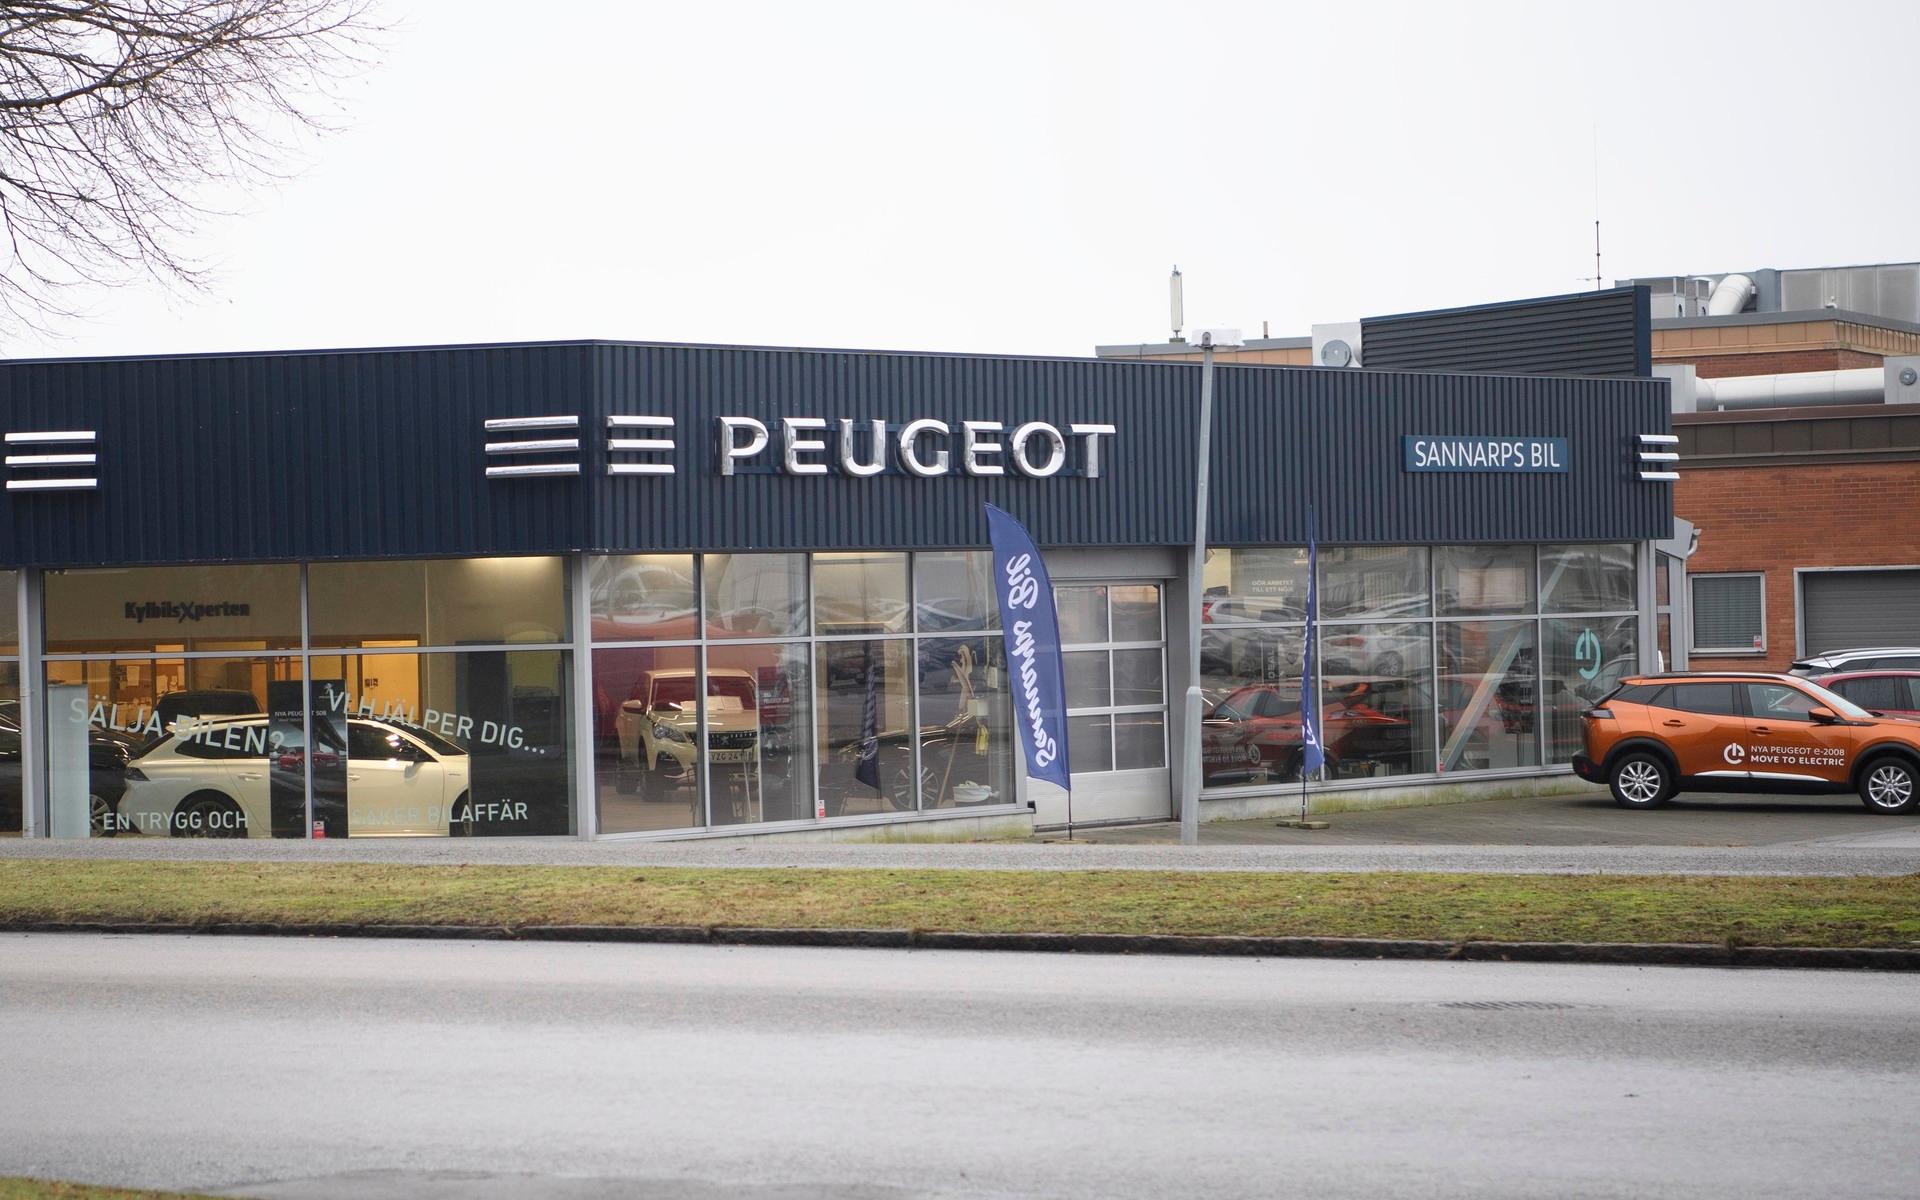 Sannarps bil grundades år 2000 och har sålt Peugeot i 21 år. Nästa sommar är den eran över.